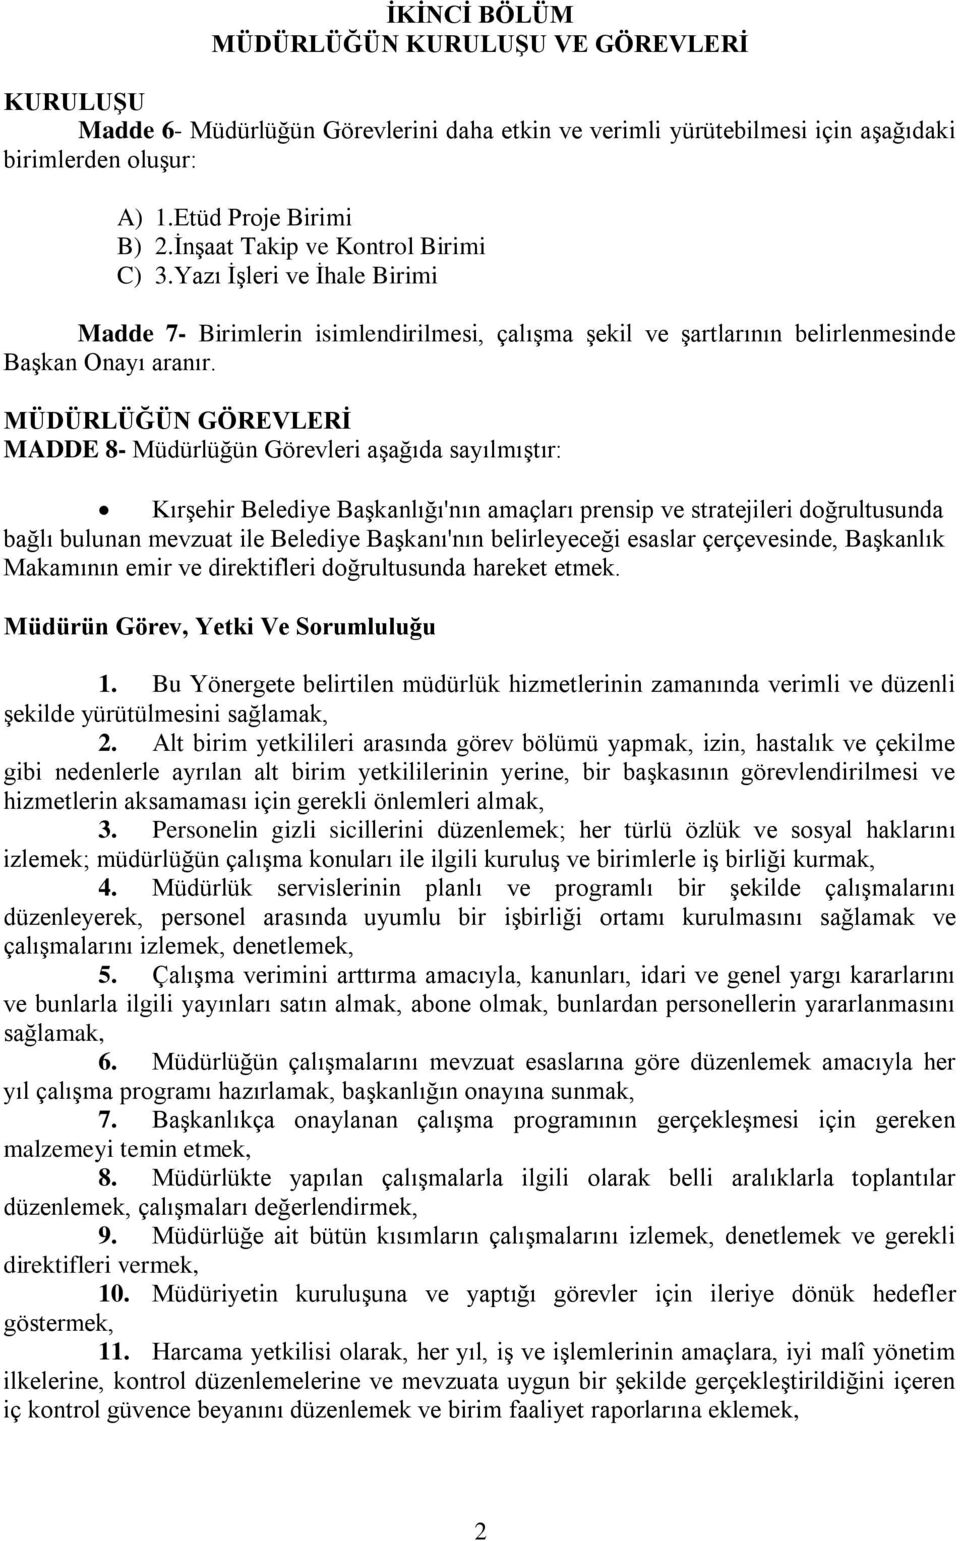 MÜDÜRLÜĞÜN GÖREVLERİ MADDE 8- Müdürlüğün Görevleri aşağıda sayılmıştır: Kırşehir Belediye Başkanlığı'nın amaçları prensip ve stratejileri doğrultusunda bağlı bulunan mevzuat ile Belediye Başkanı'nın